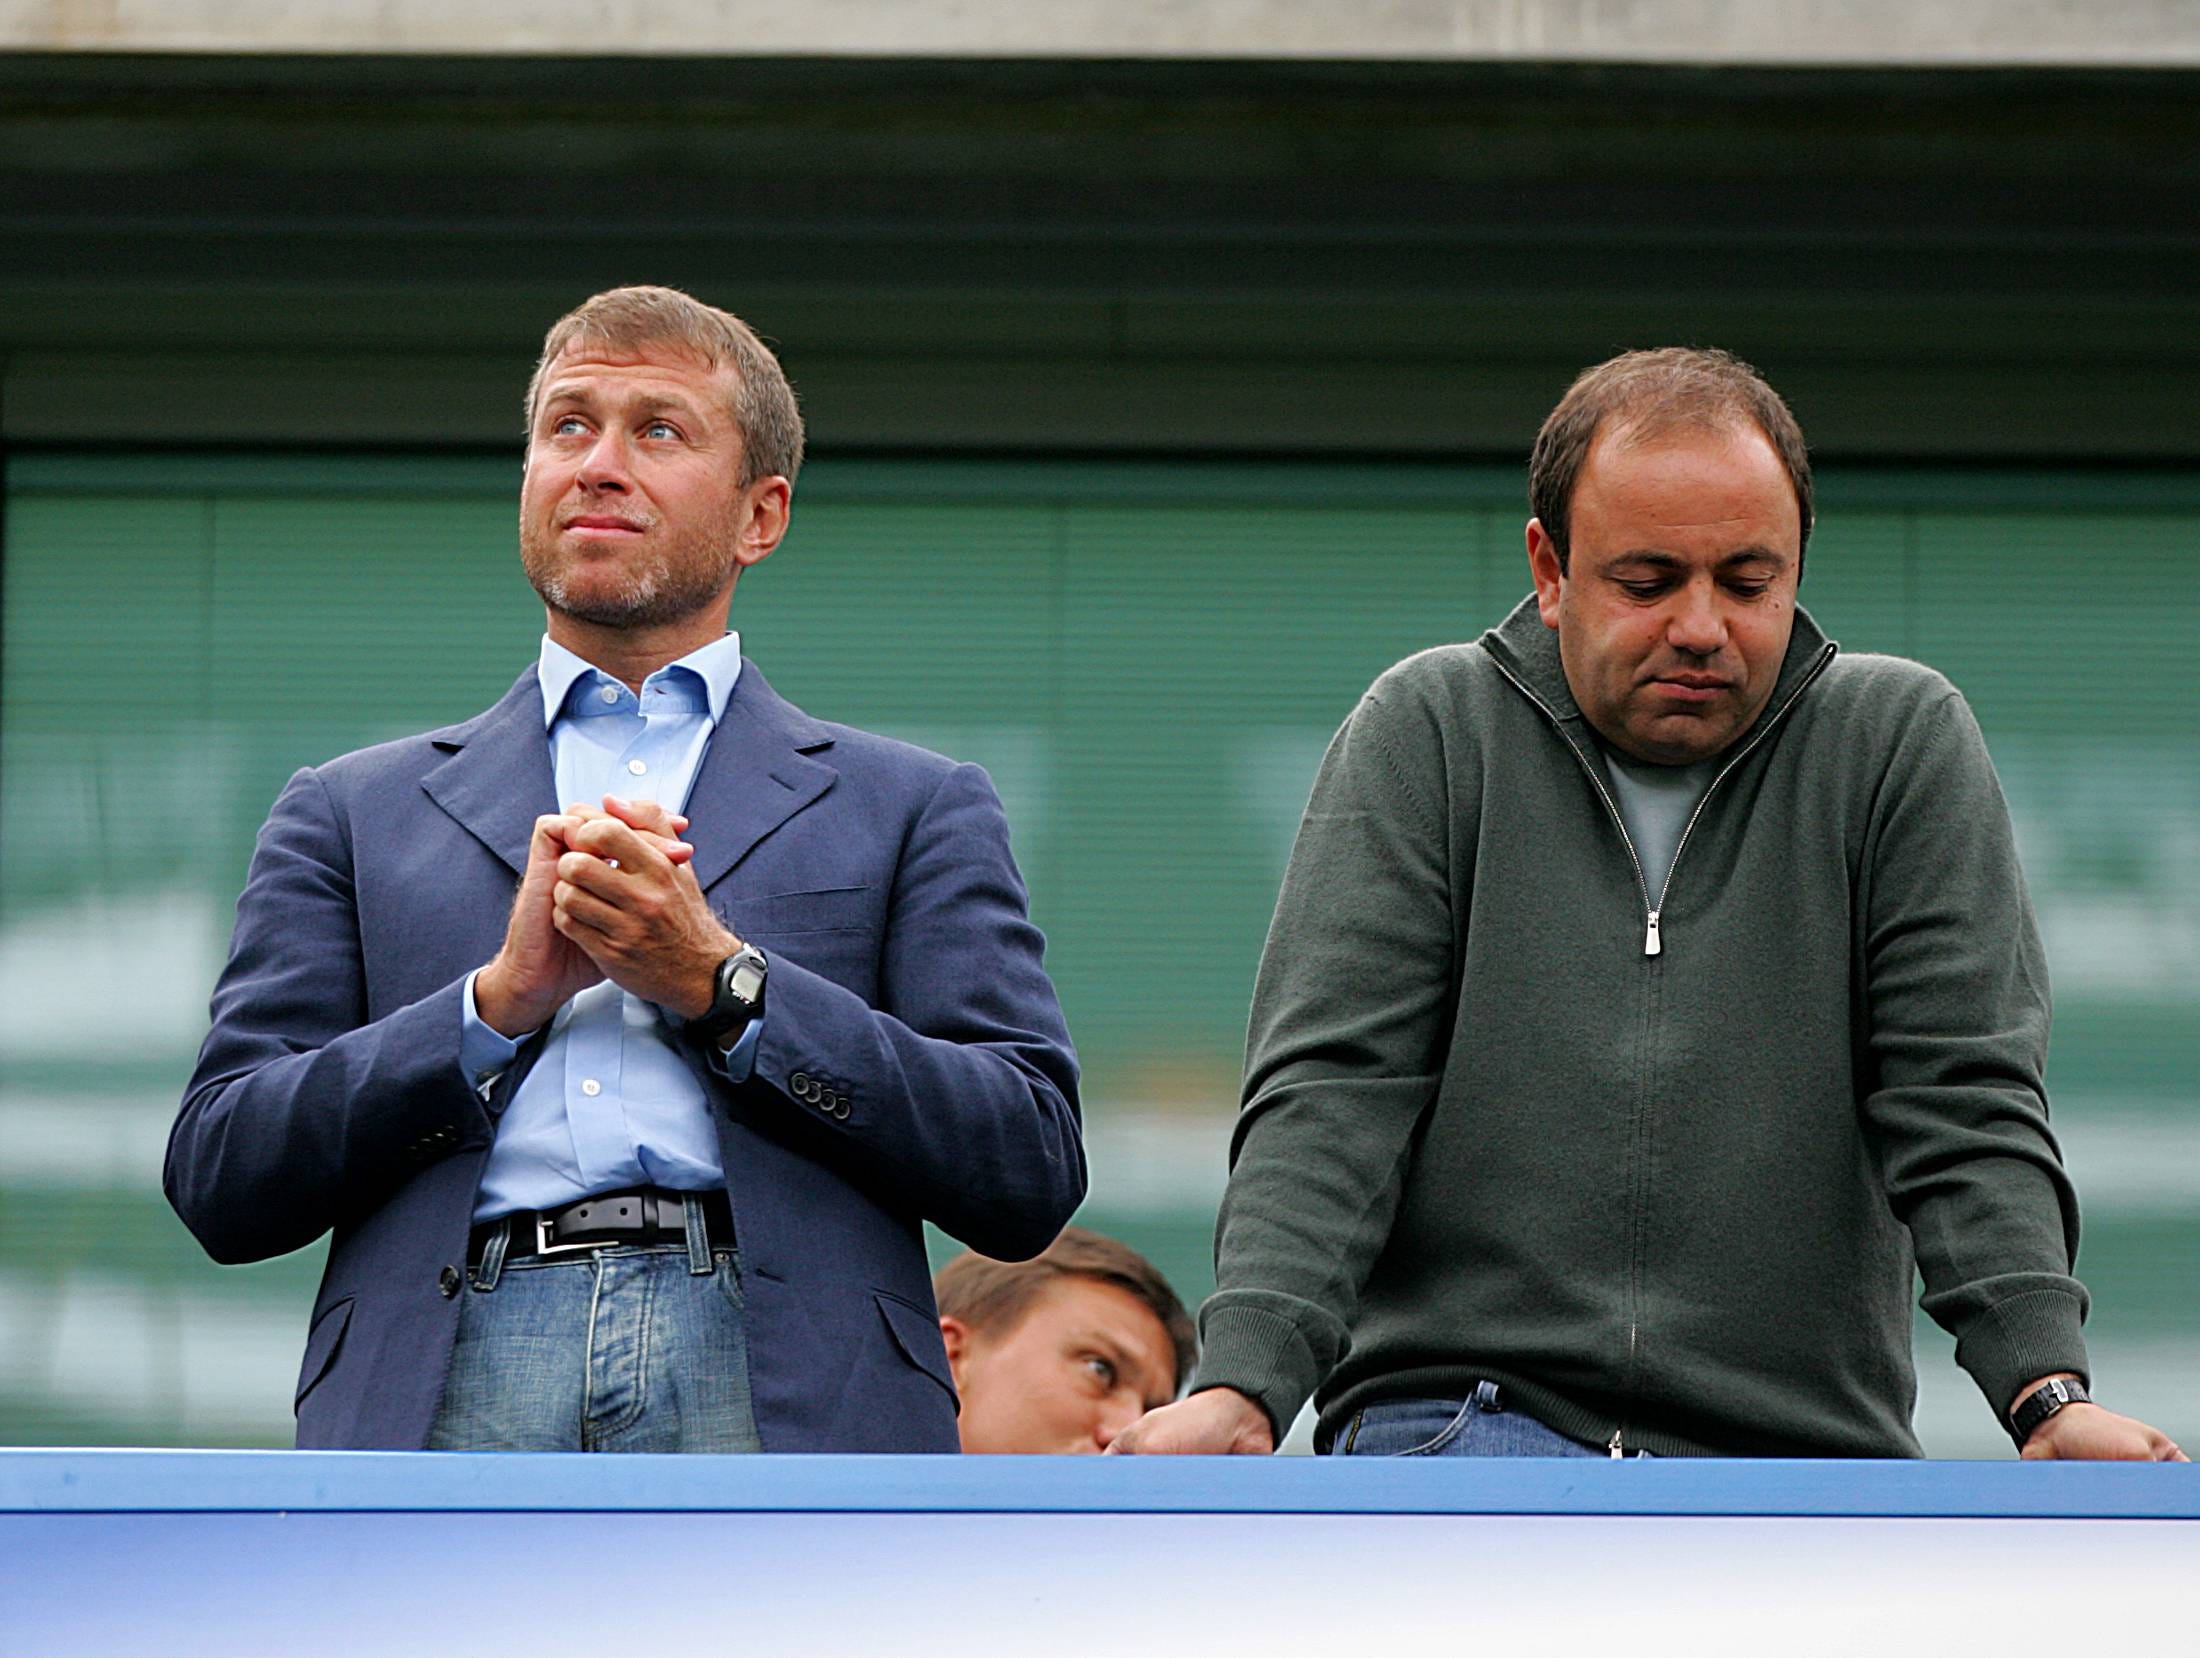 Chelsea owner Roman Abramovich with Eugene Shvidler